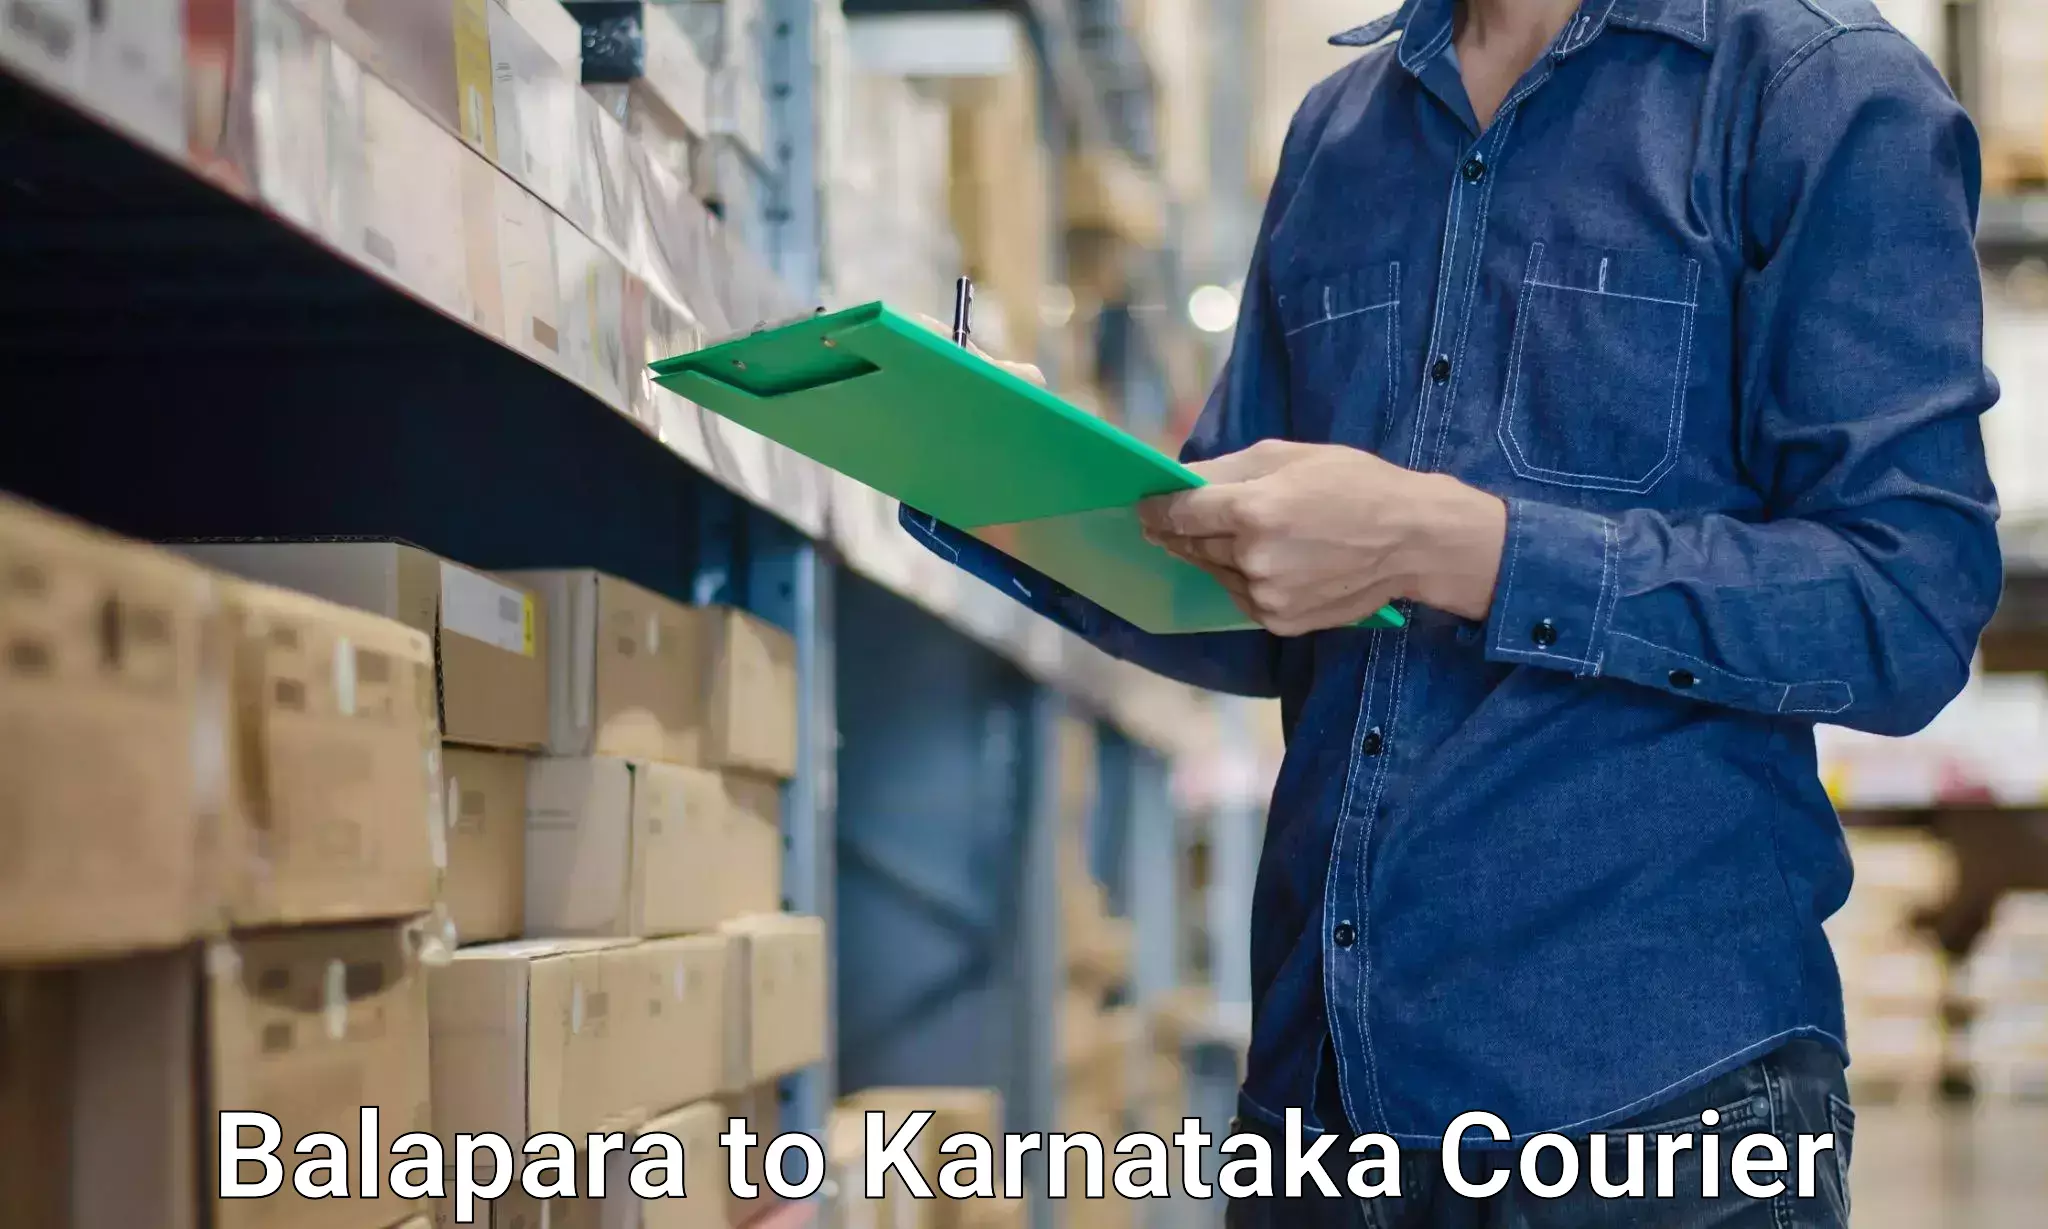 Efficient furniture movers Balapara to Karnataka